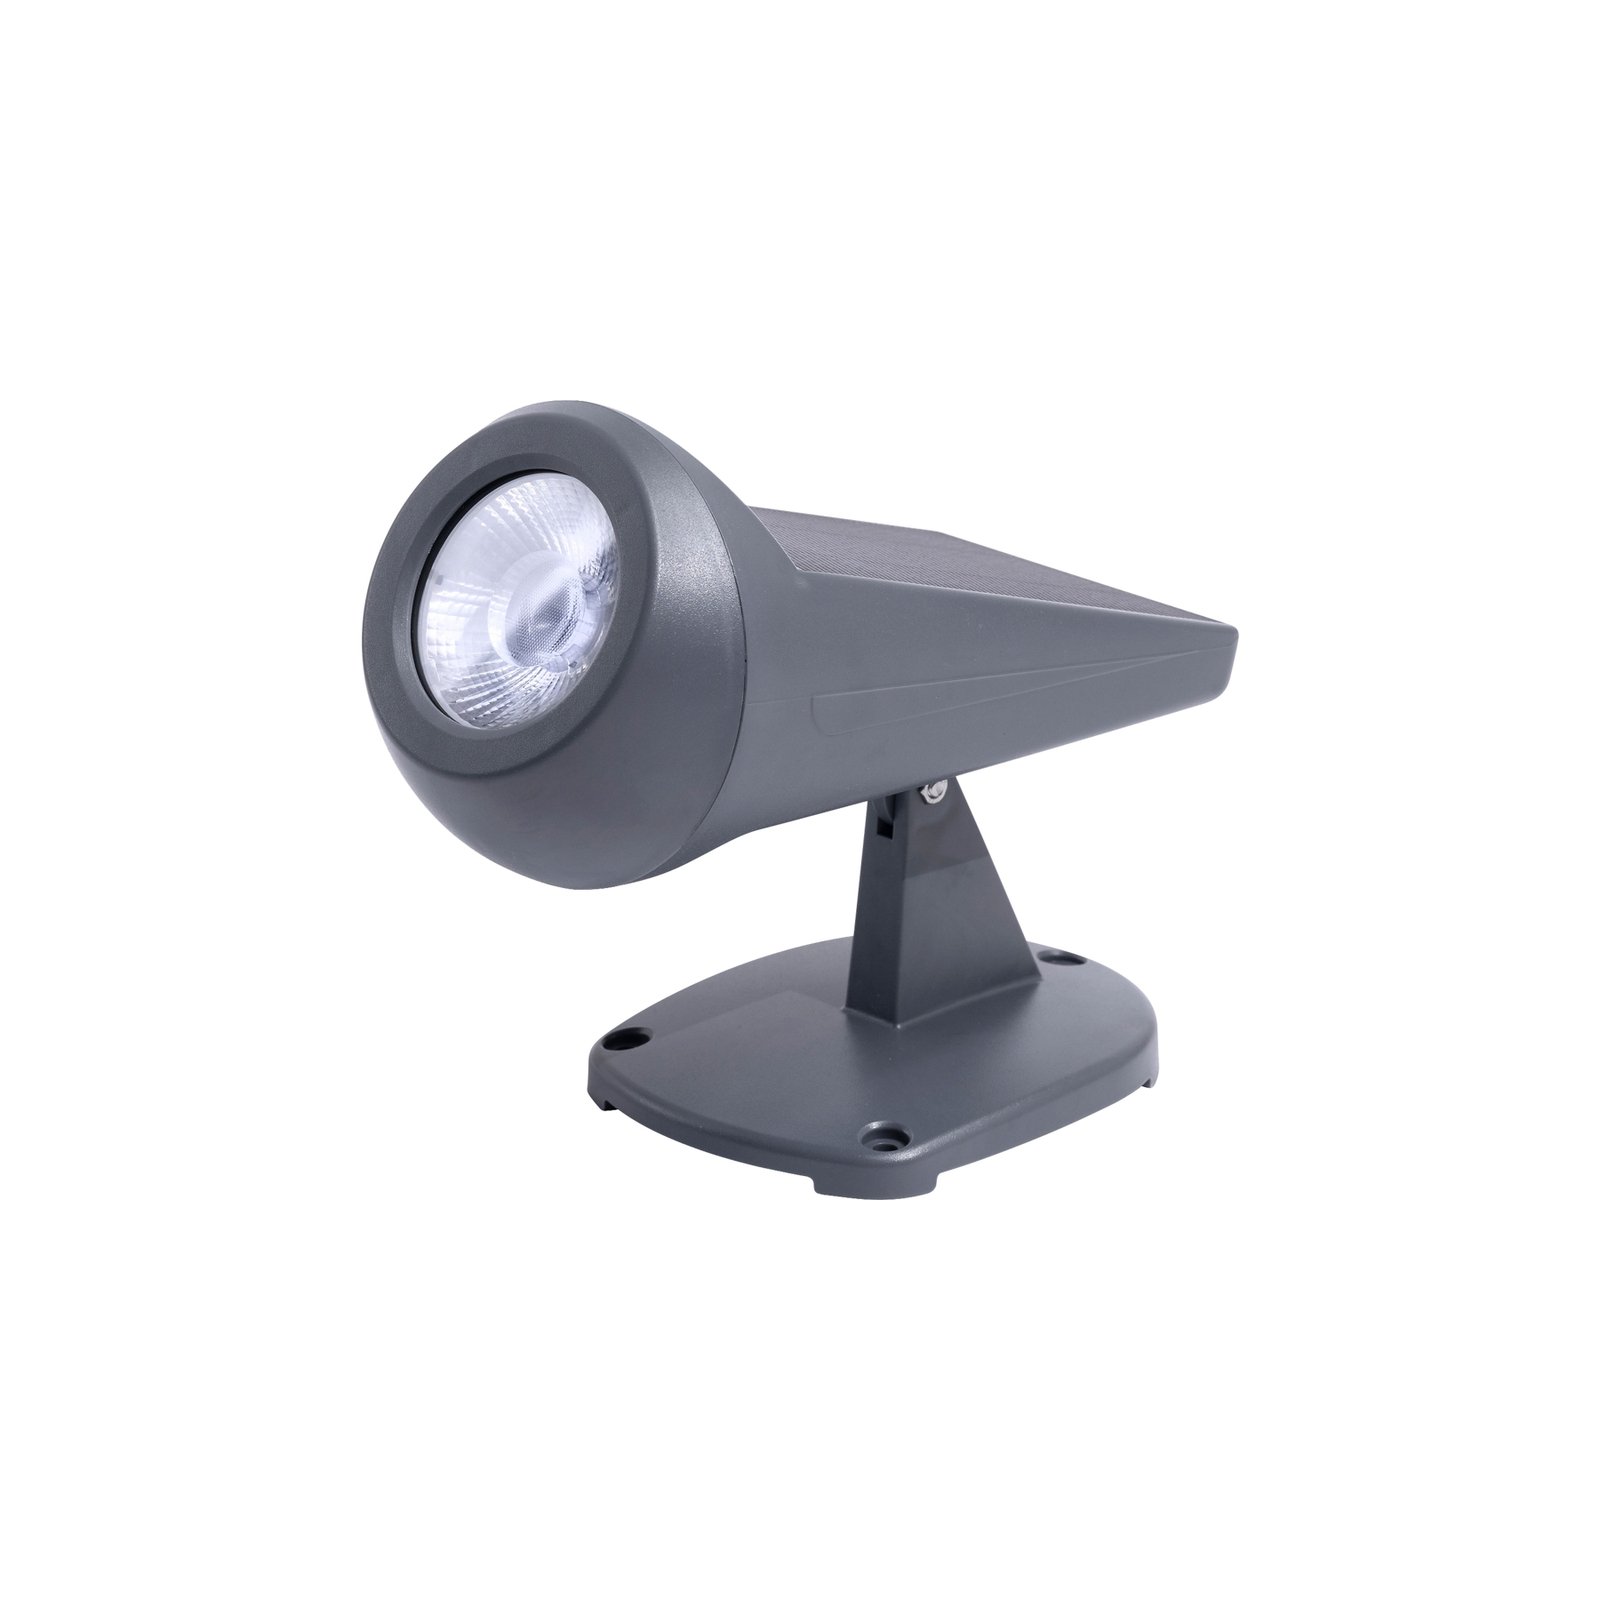 Spot LED floor spotlight daylight sensor, dimmable